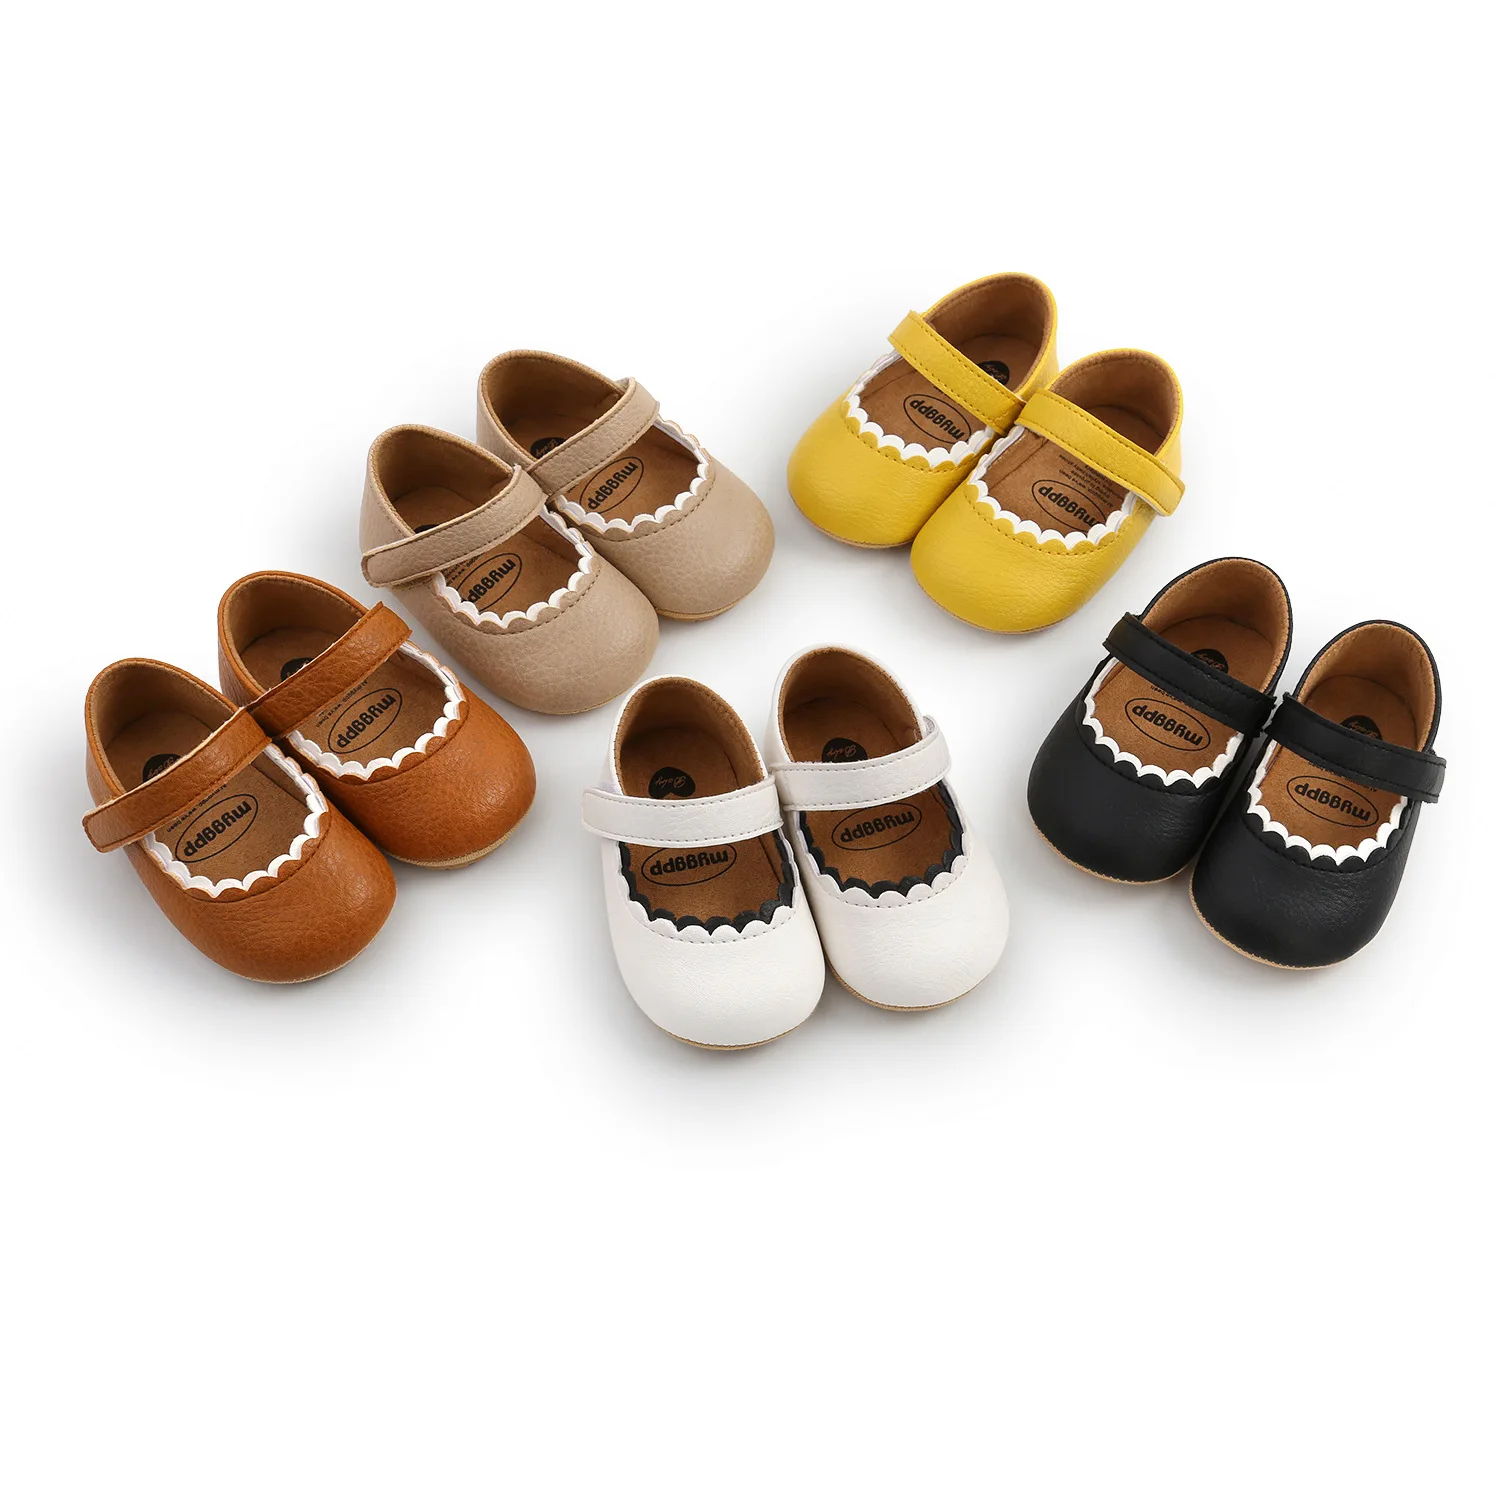 Zapatos Informales De Buena Calidad Para Bebés,Transpirables,Gran Oferta - Buy Bebé Casuales De Bebé,Bebé Zapatos Niño Zapatos Niña Zapatos Product on Alibaba.com